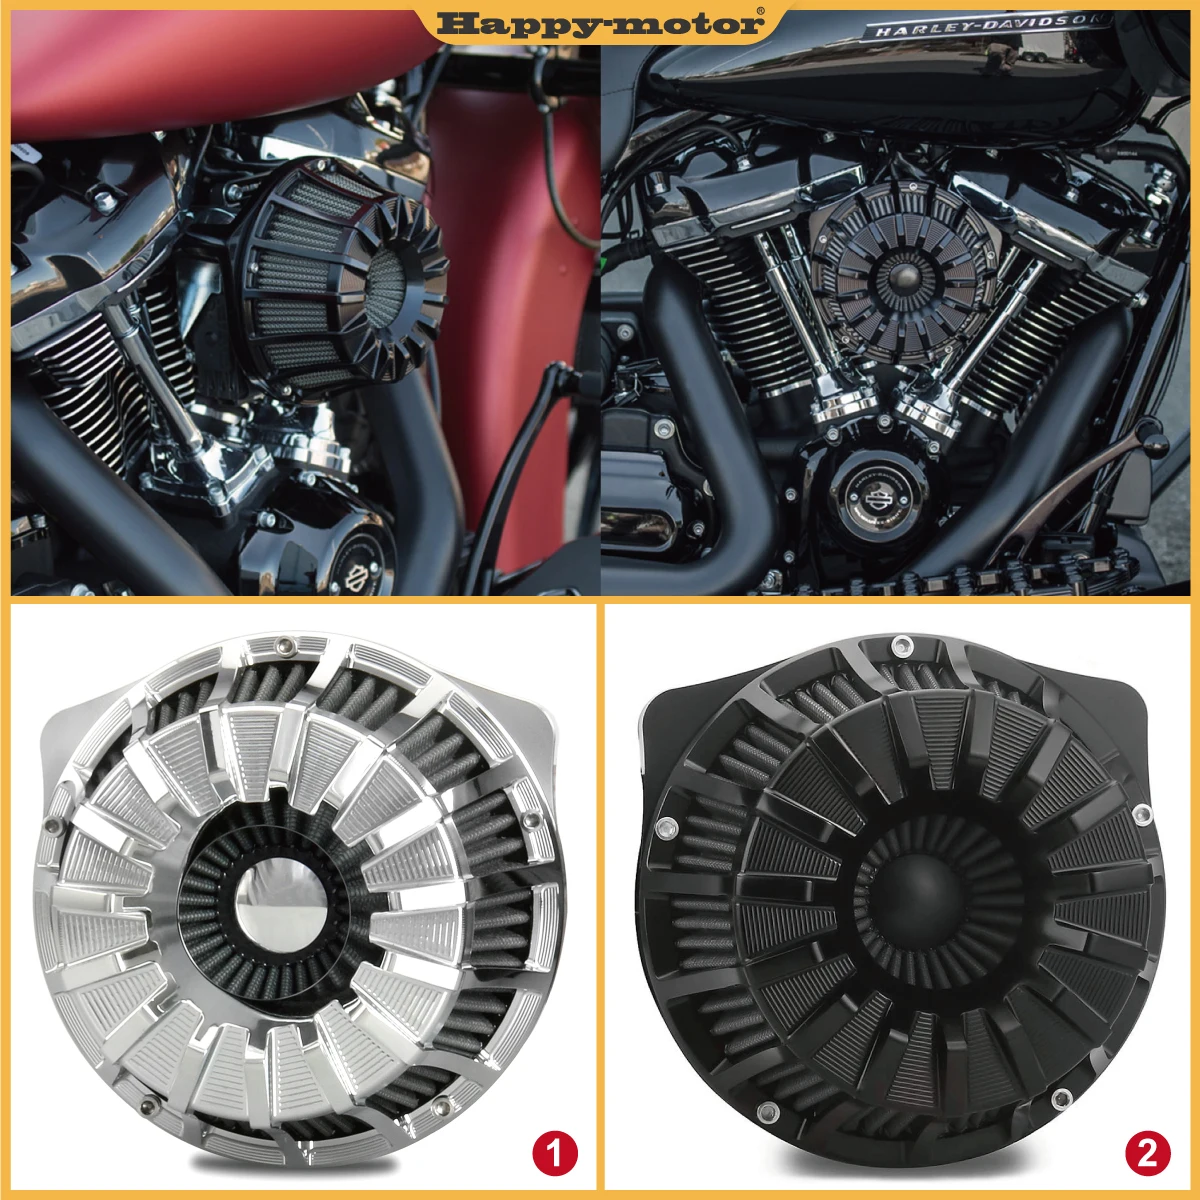 

Chromed/Black 15 speak spokes Air Cleaner Intake Filter For XL1200R Sportster Roadster 96-03 XL1200S Sportster 91-22